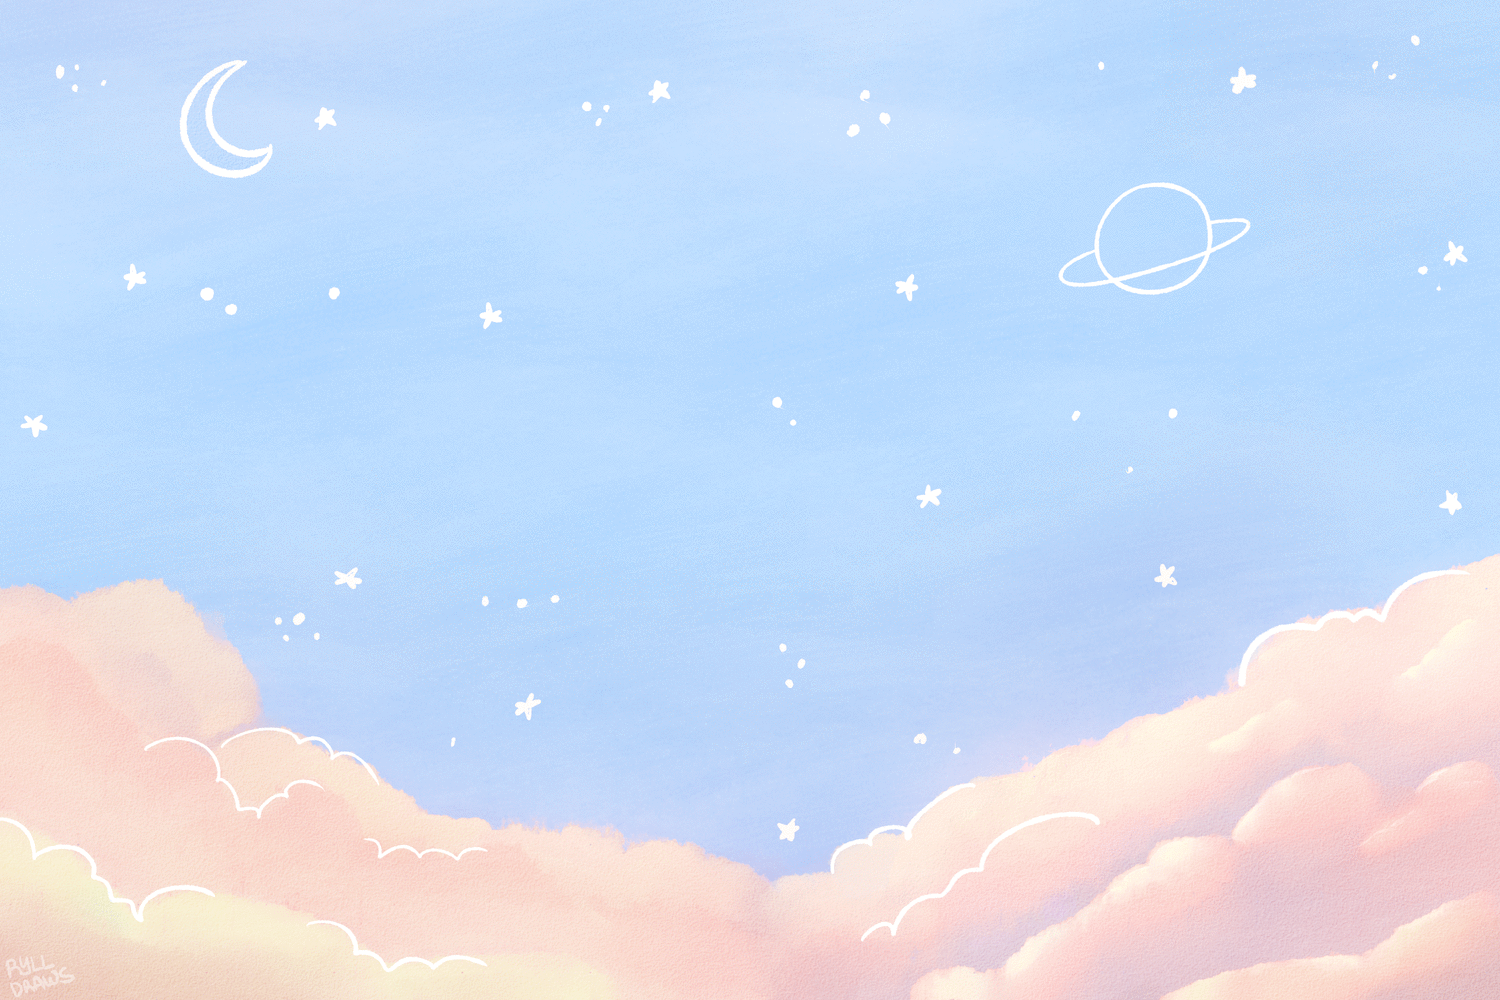 Nền trời màu pastel với tông màu dịu nhẹ, tạo cảm giác yên bình và thơ mộng, sẽ là một lựa chọn tuyệt vời cho ảnh nền của bạn. Hãy tải Pastel Sky Background GIF ngay để cảm nhân sự tinh tế, tao nhã của bức tranh thiên nhiên này.